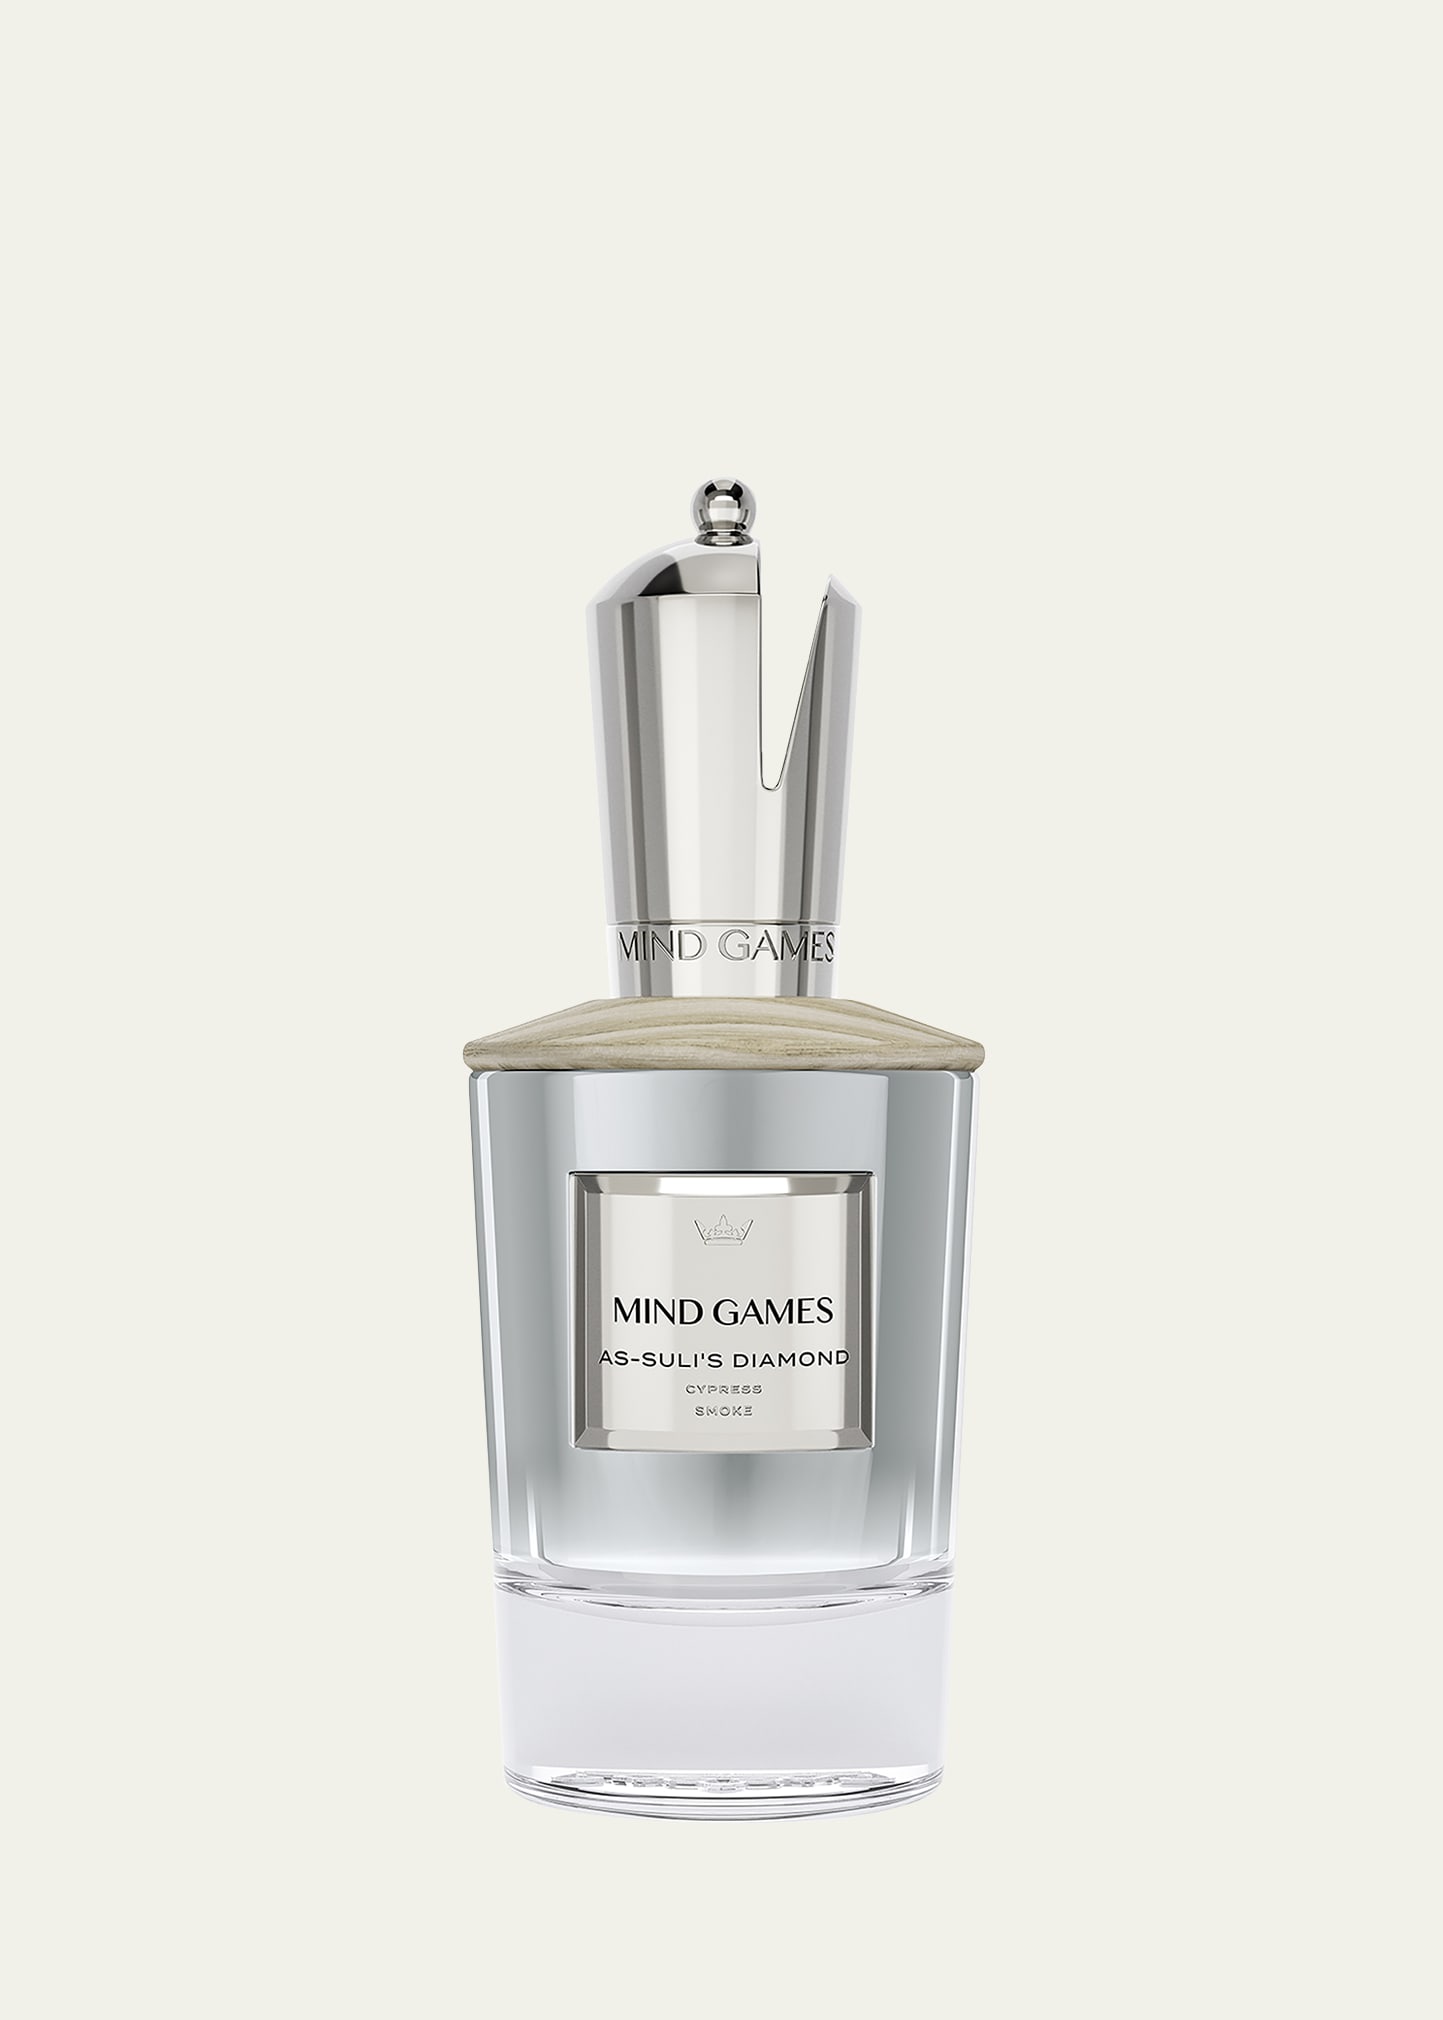 As-Suli's Diamond Extrait de Parfum - Silver Bishop, 3.4 oz.